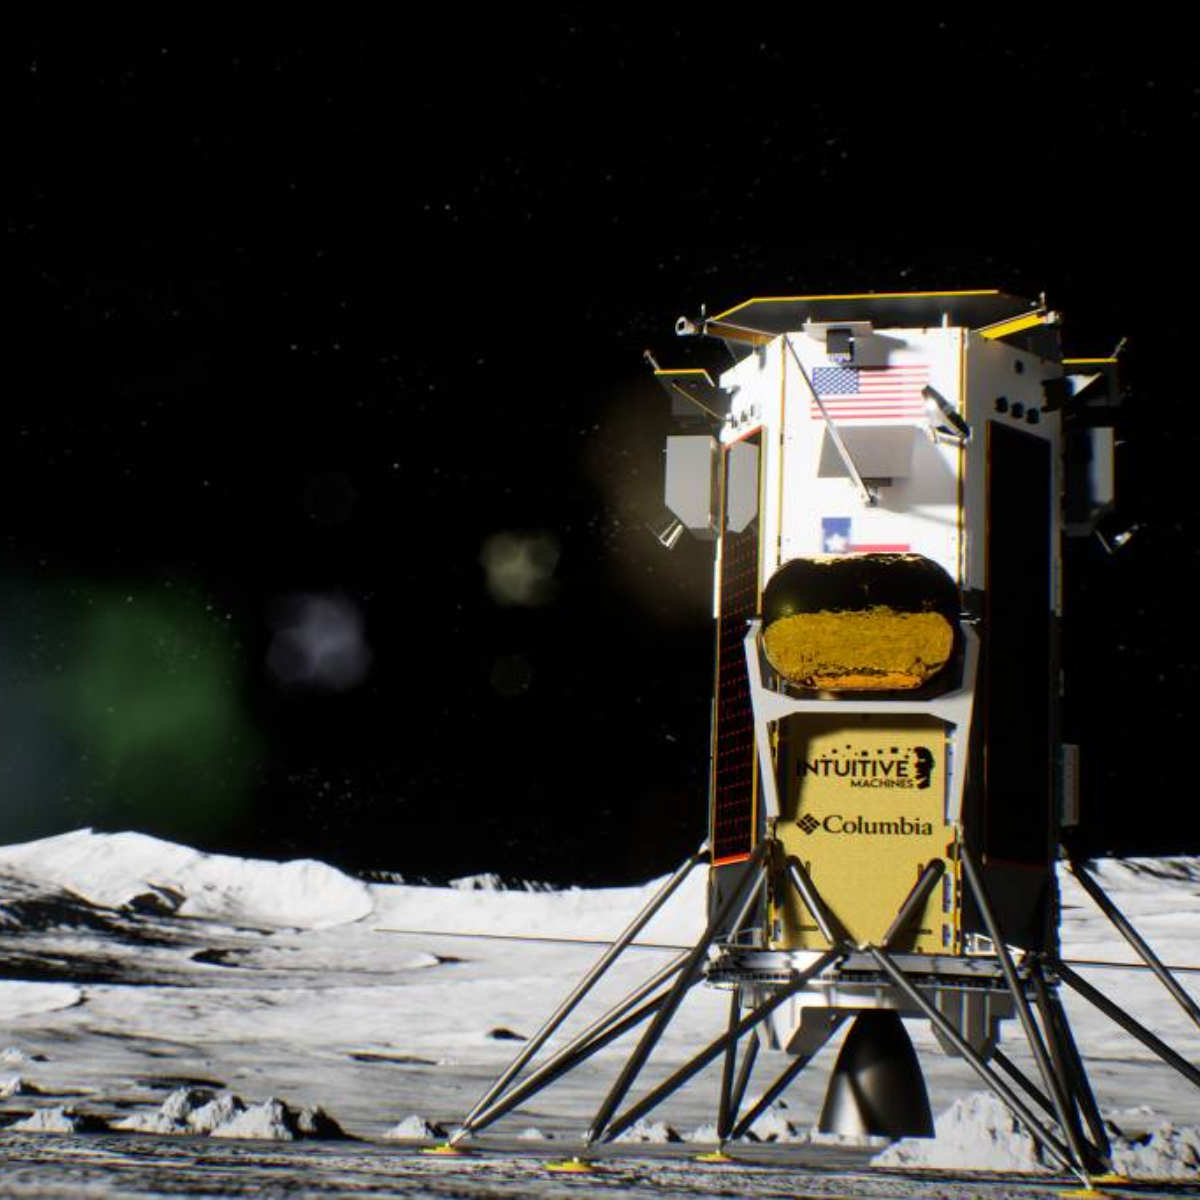  nova missão comercial a lua 